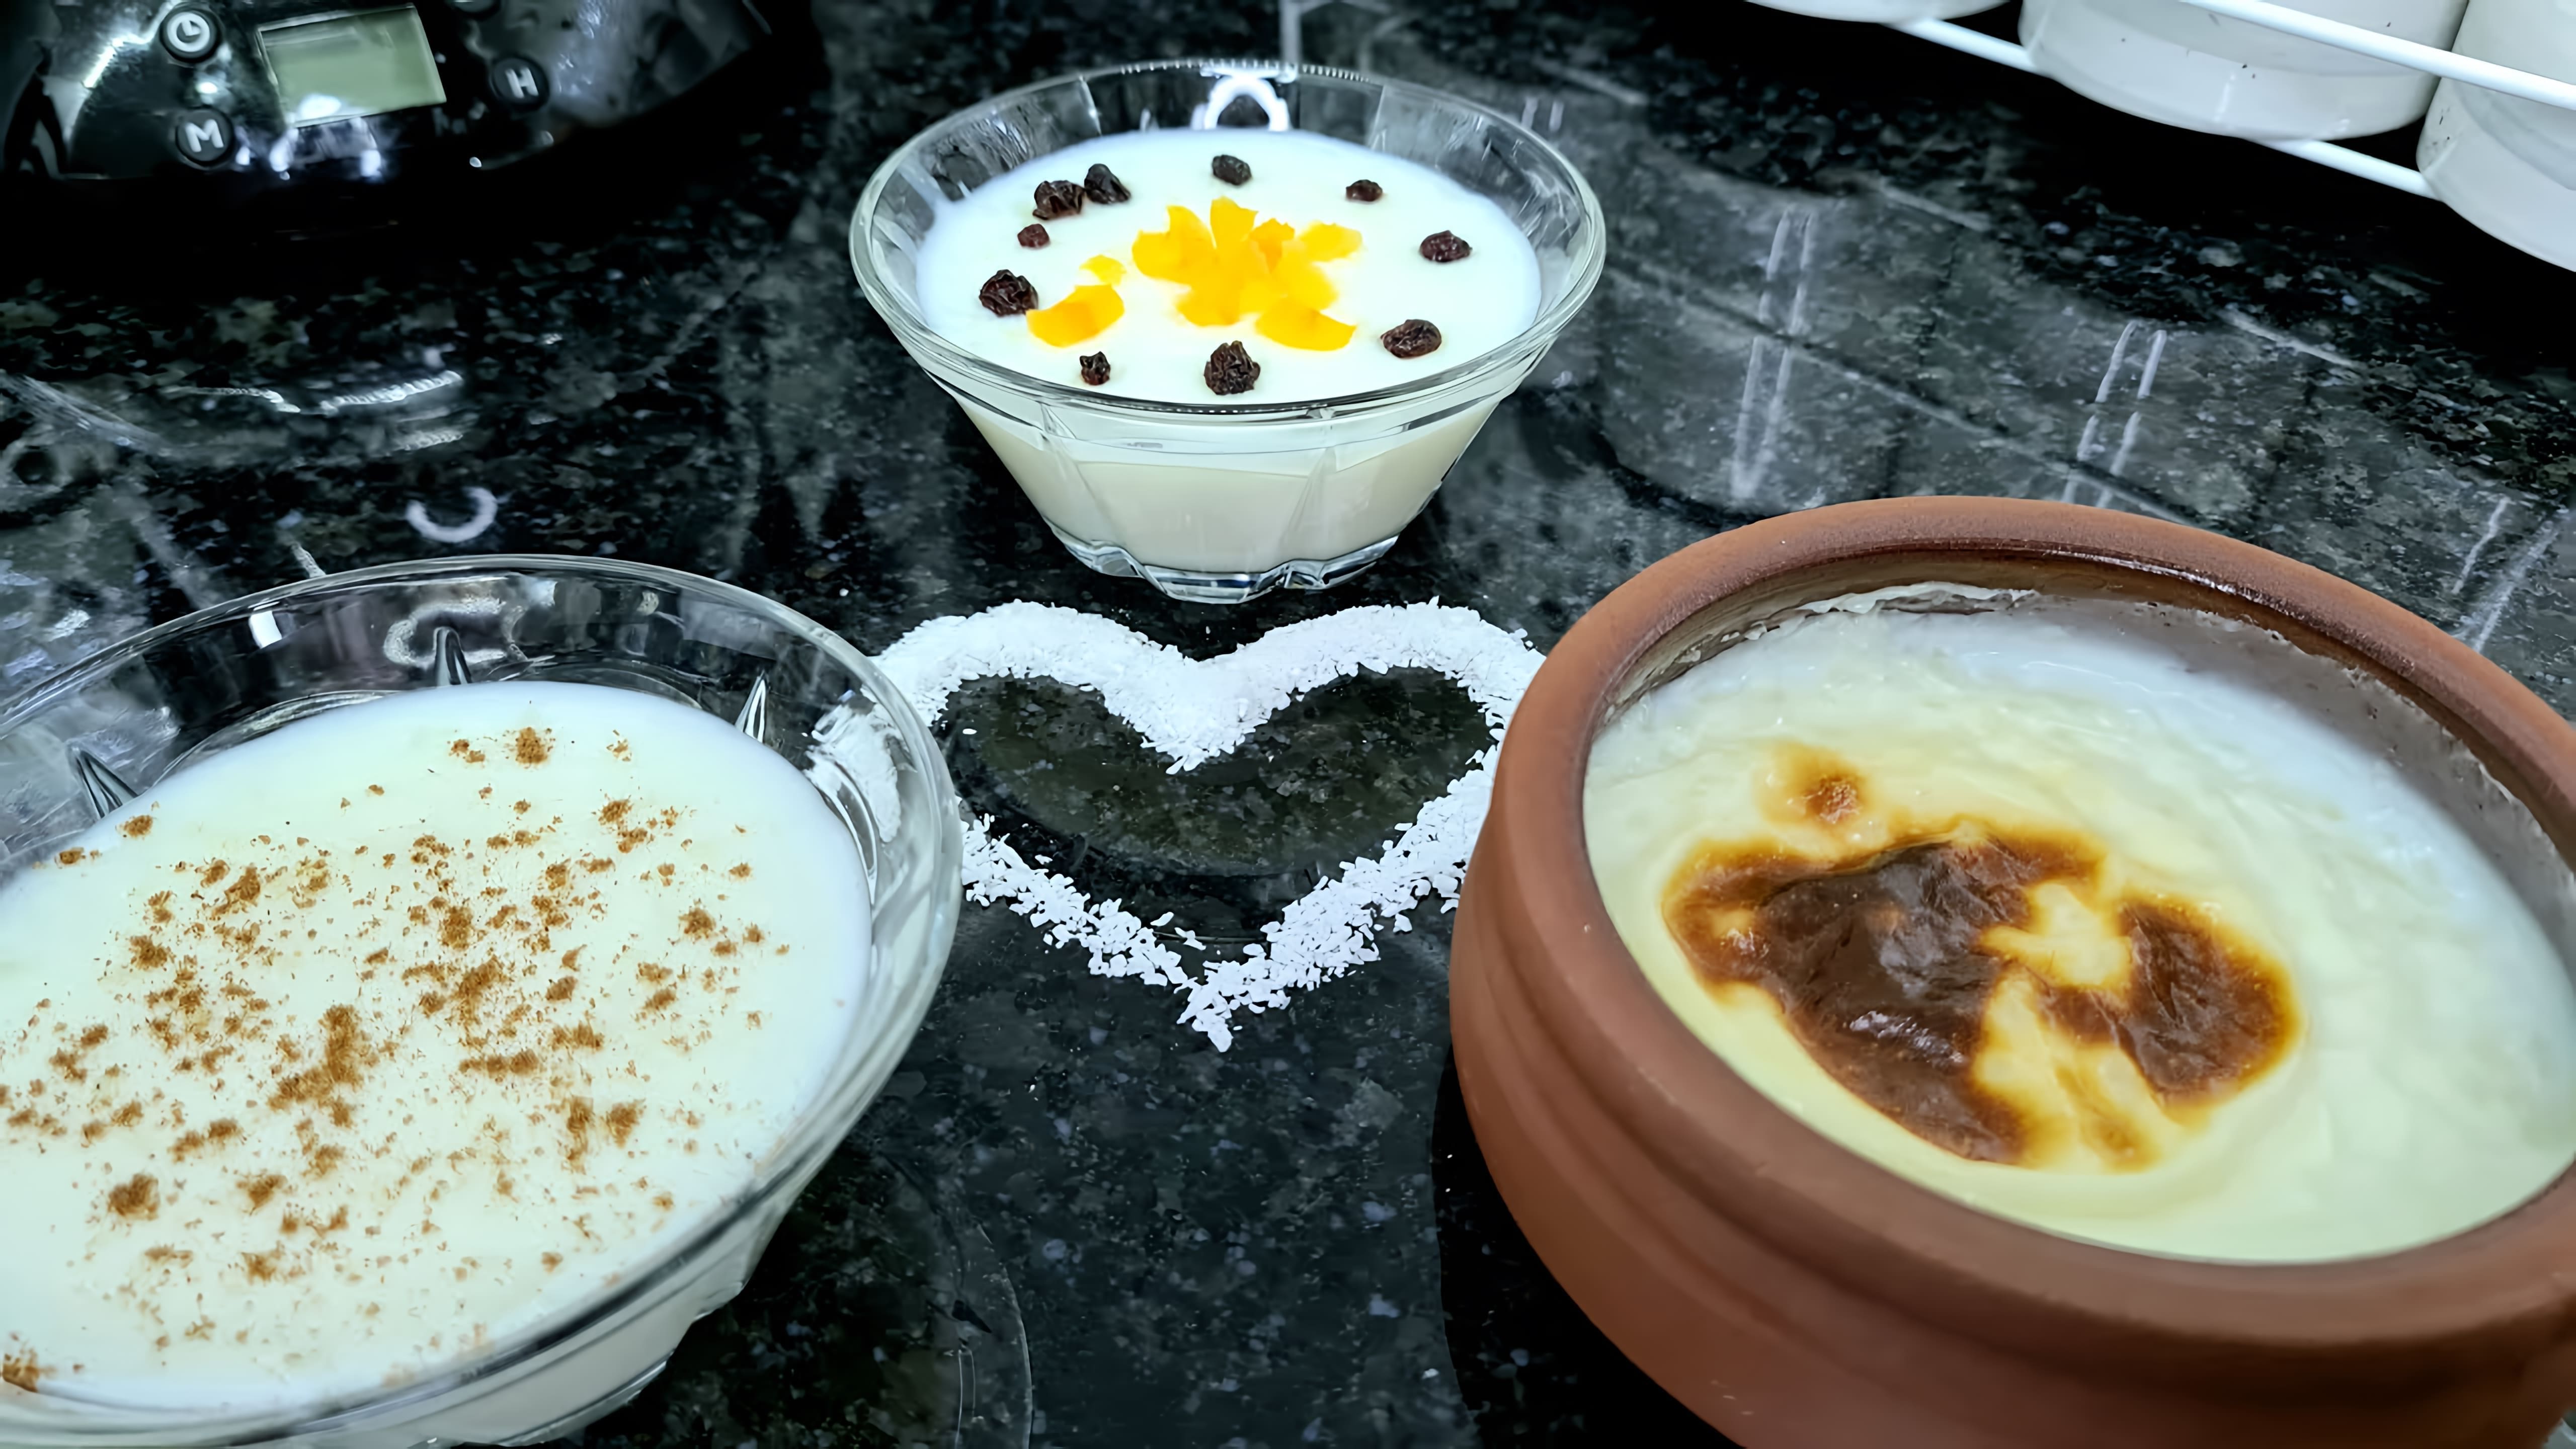 В этом видео демонстрируется процесс приготовления турецкого десерта под названием "Сютлач"